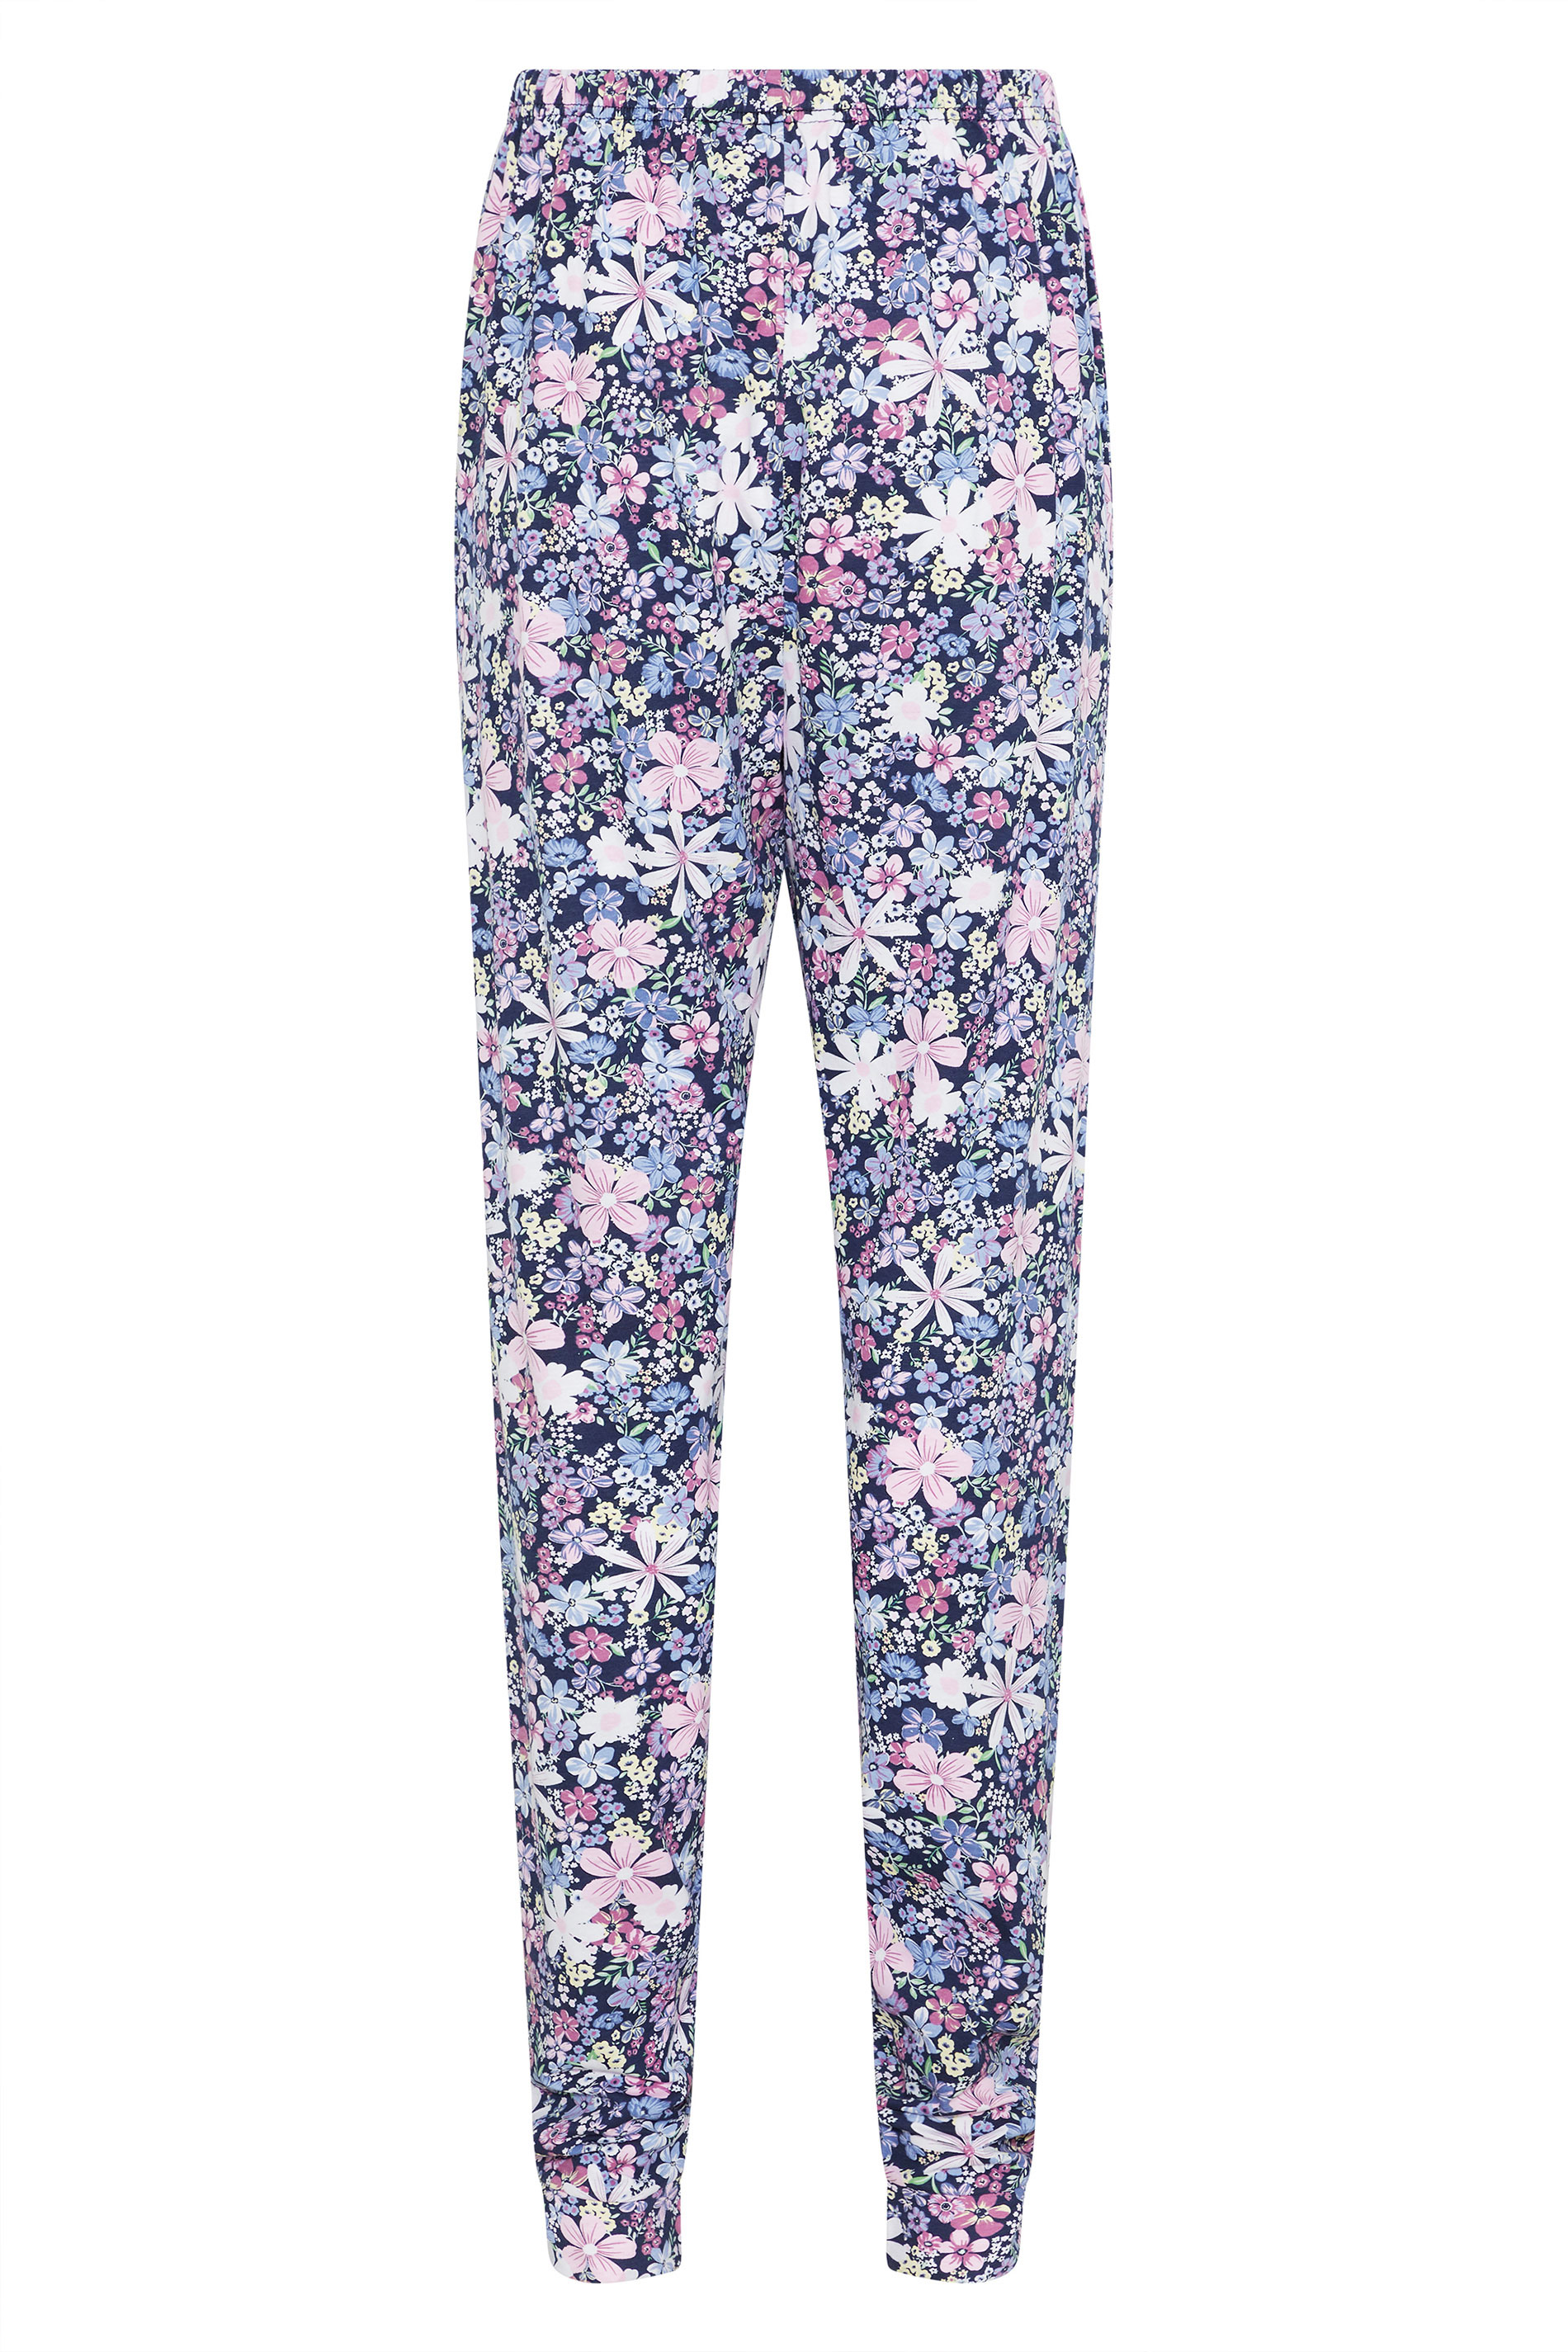 LTS Tall Women's Navy Blue Summer Floral Cuffed Pyjama Cotton Bottoms